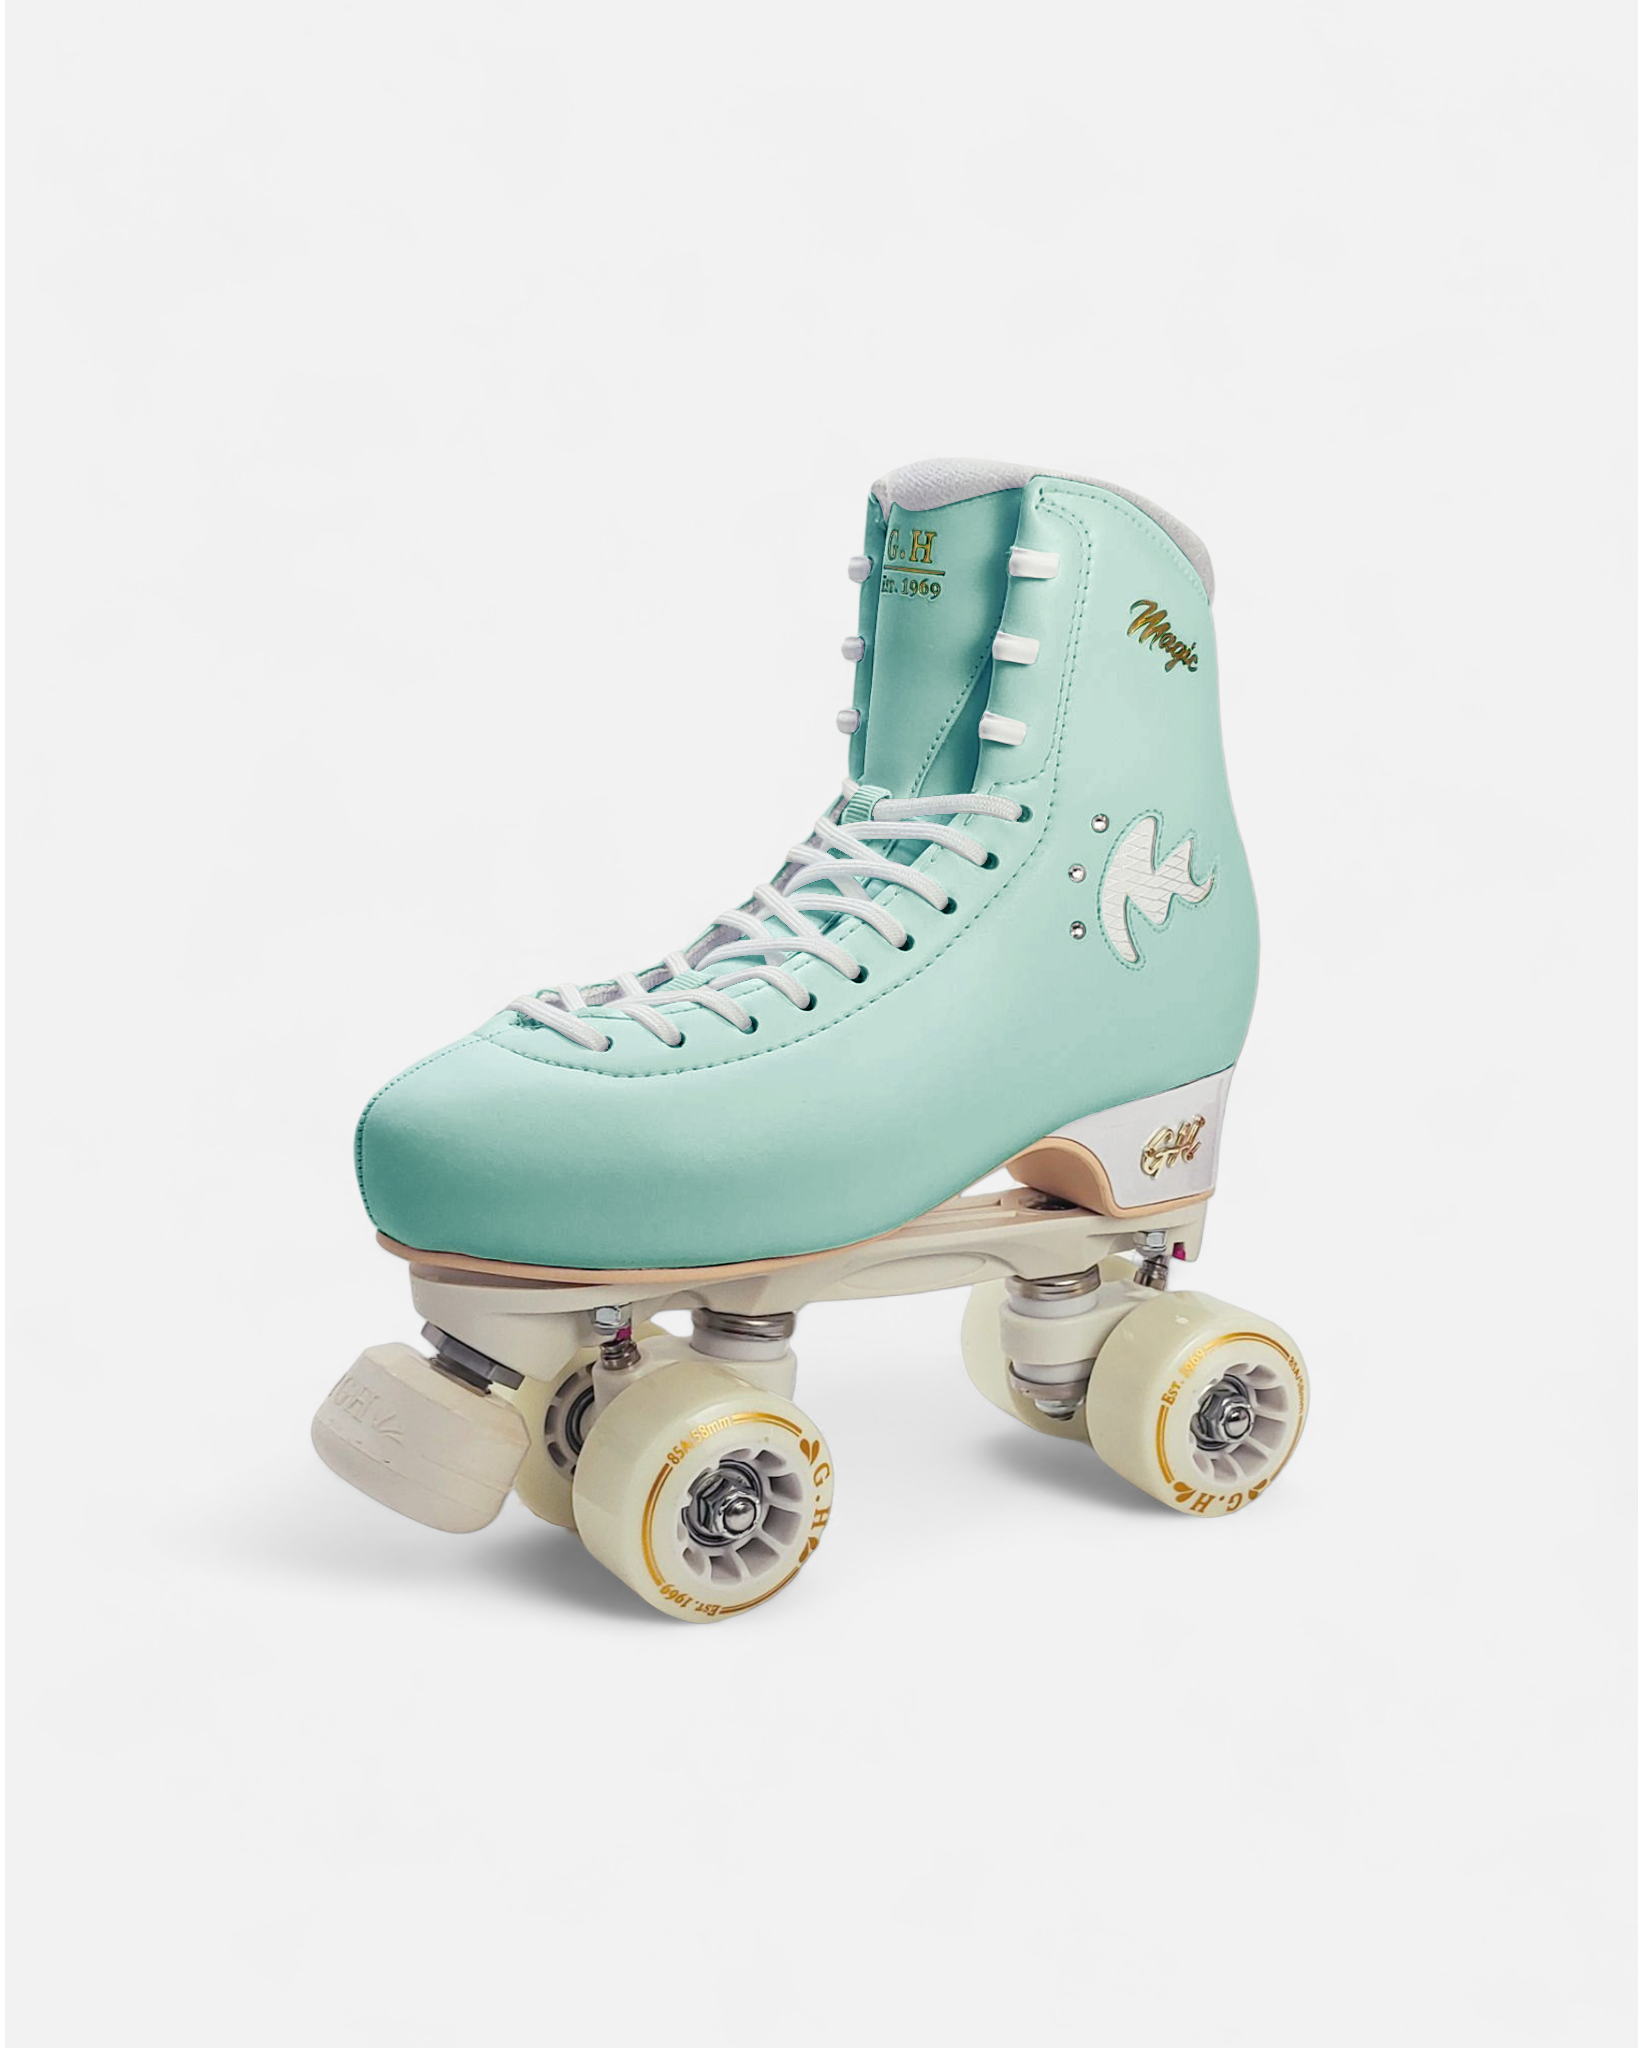 Magic Quad Roller Skates (vegan leather）